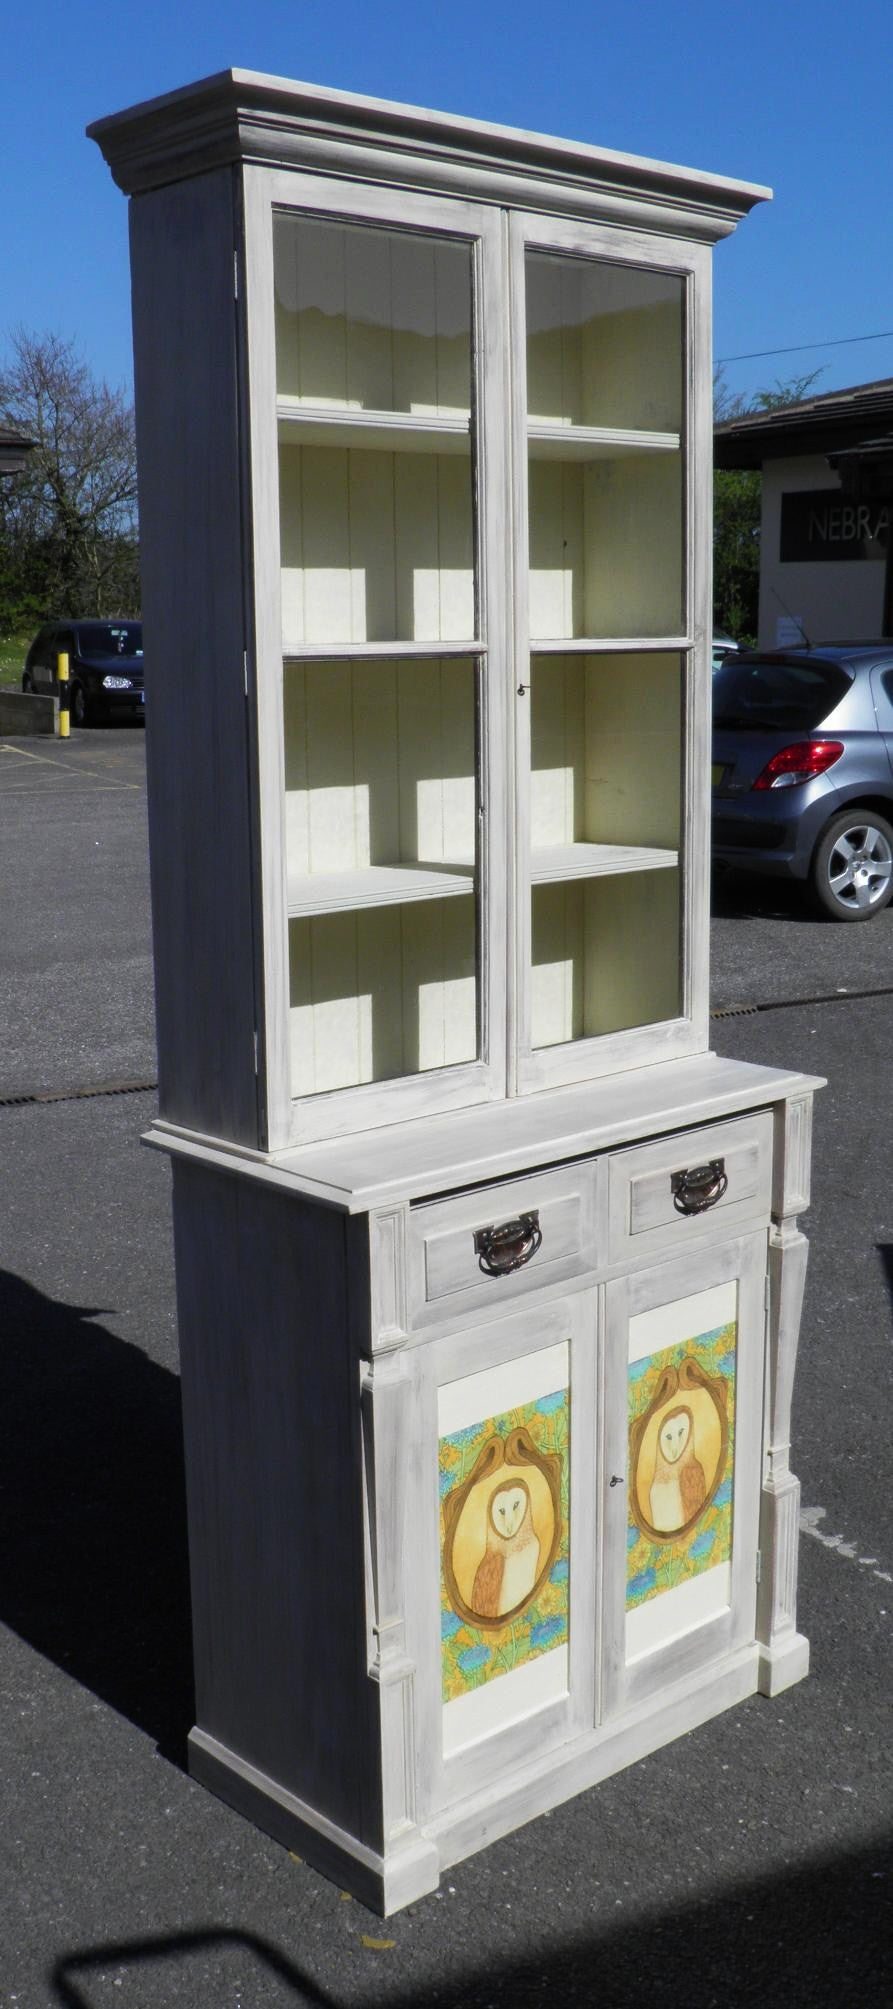 Pine Bookcase, Art Nouveau Style With Owl Decoupage